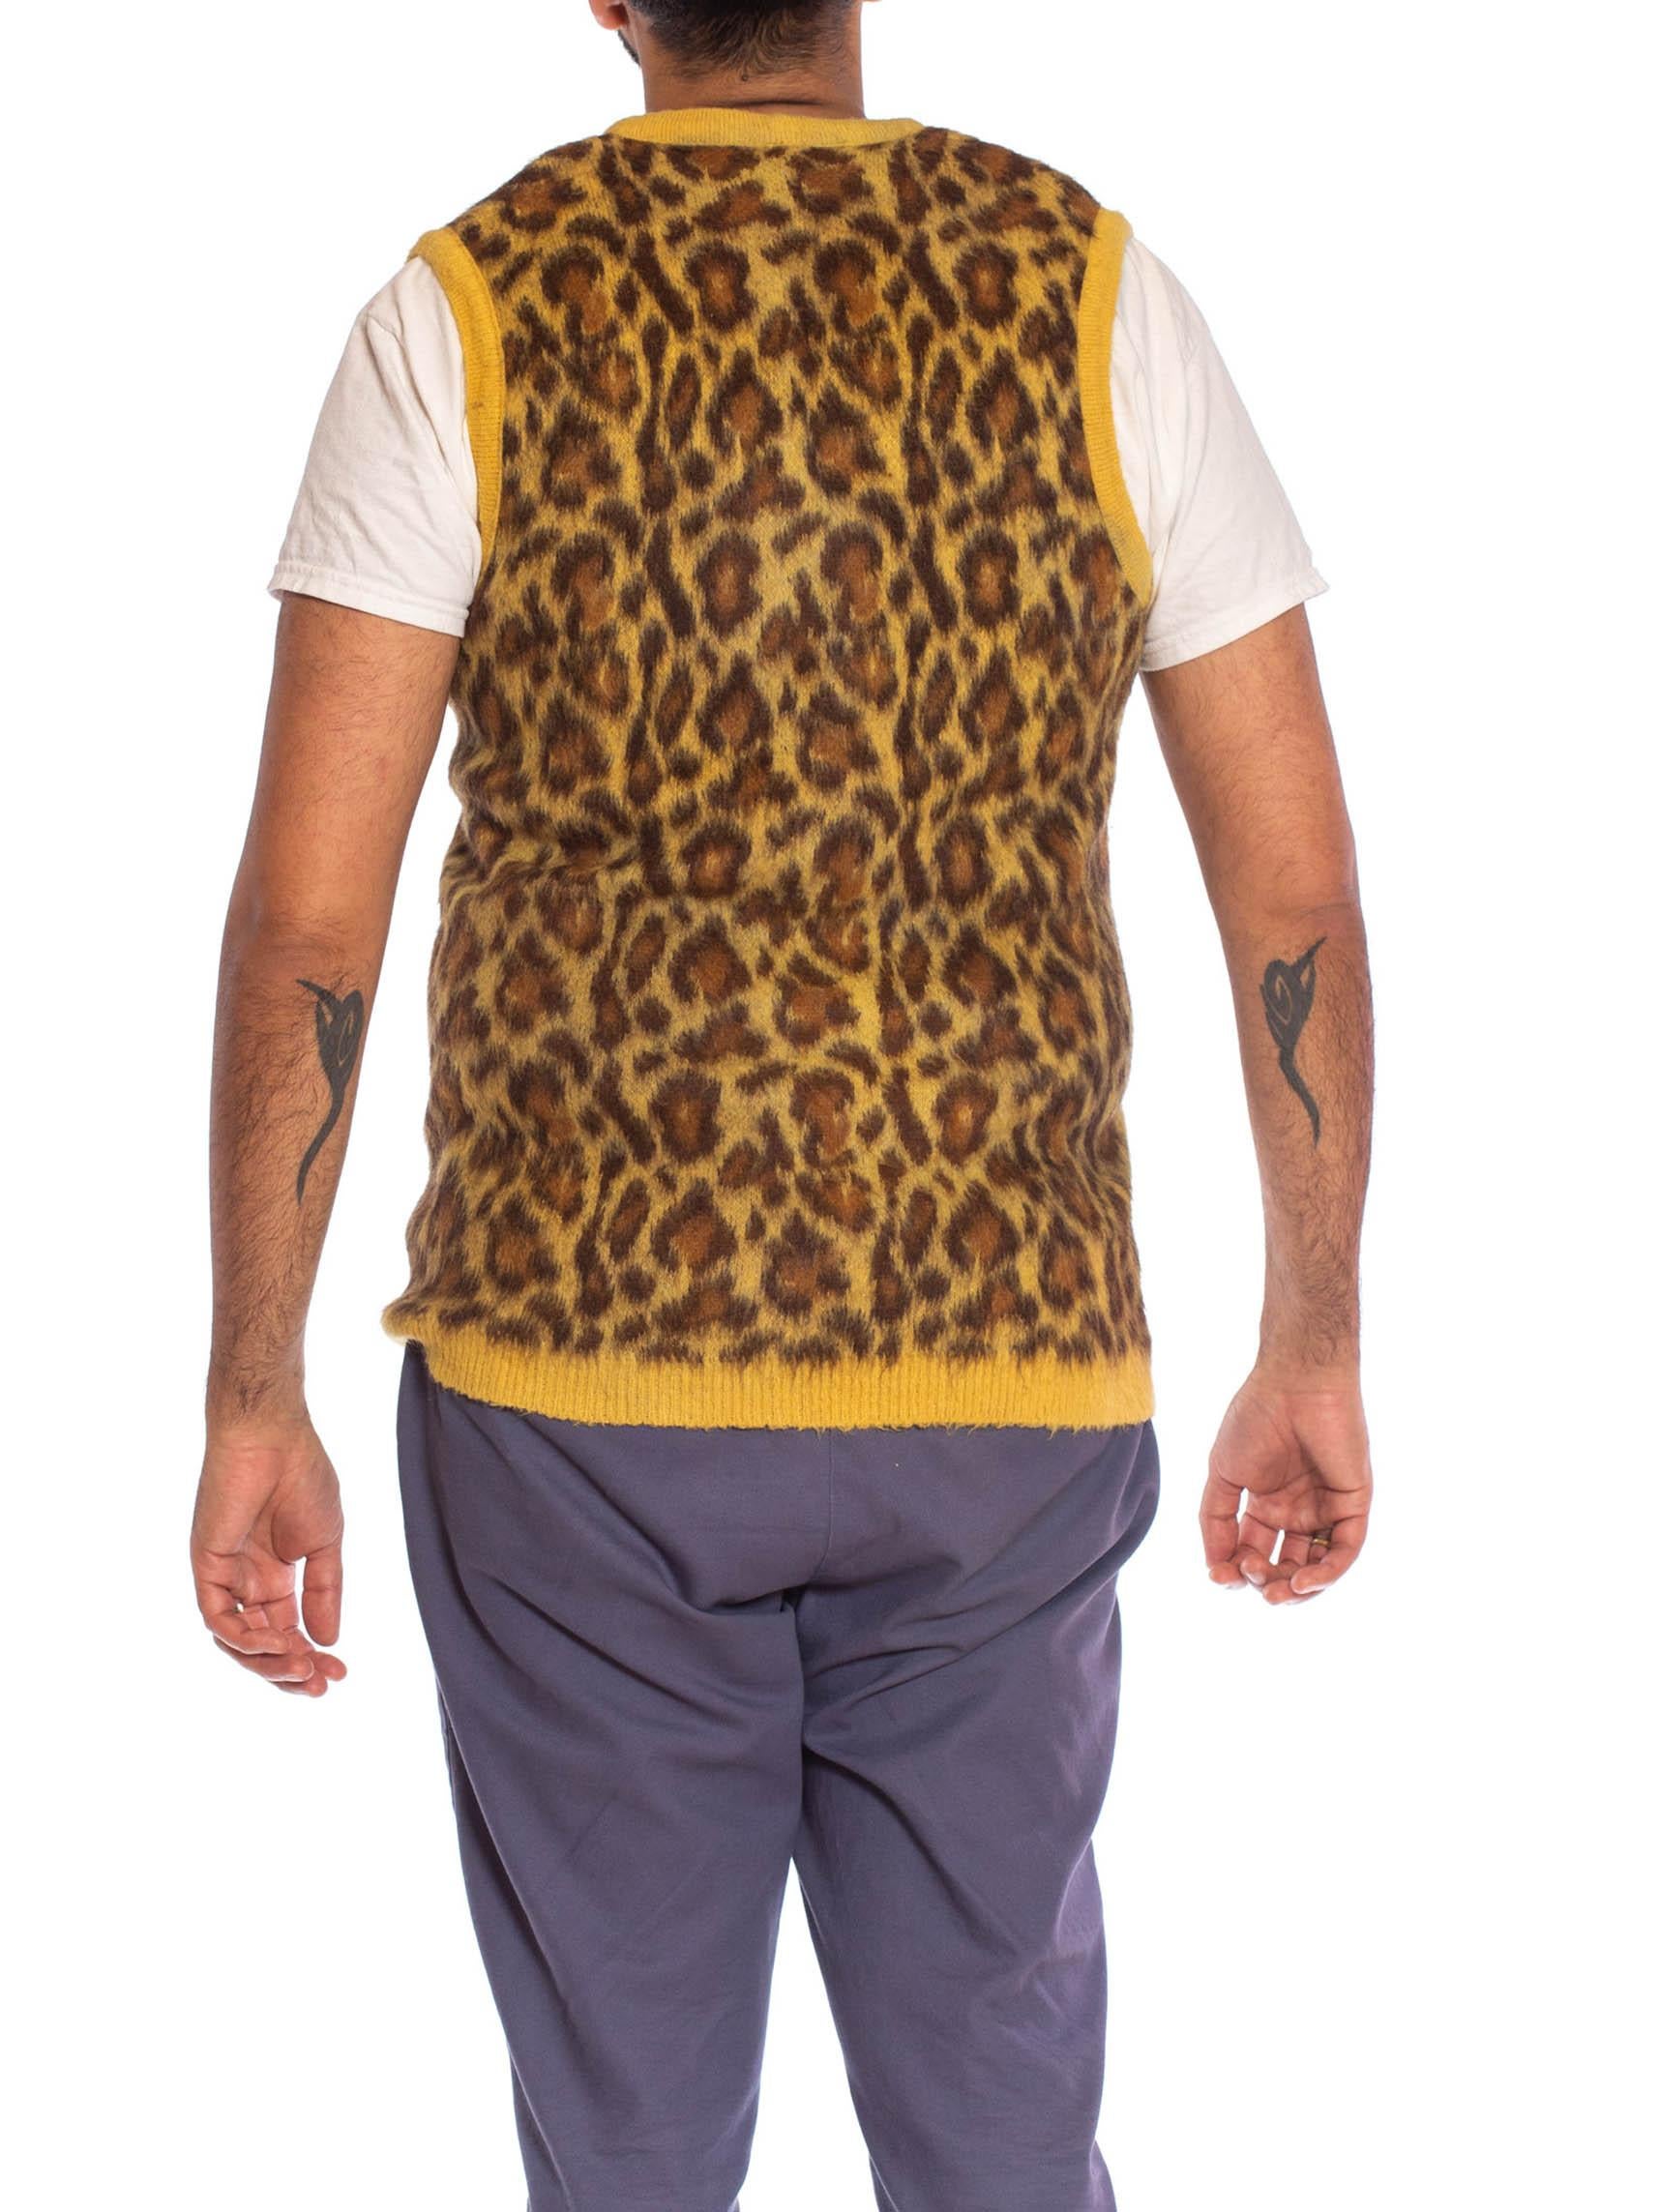 Men's 1950S Leopard Print Mohair Blend Knit Sweater Vest